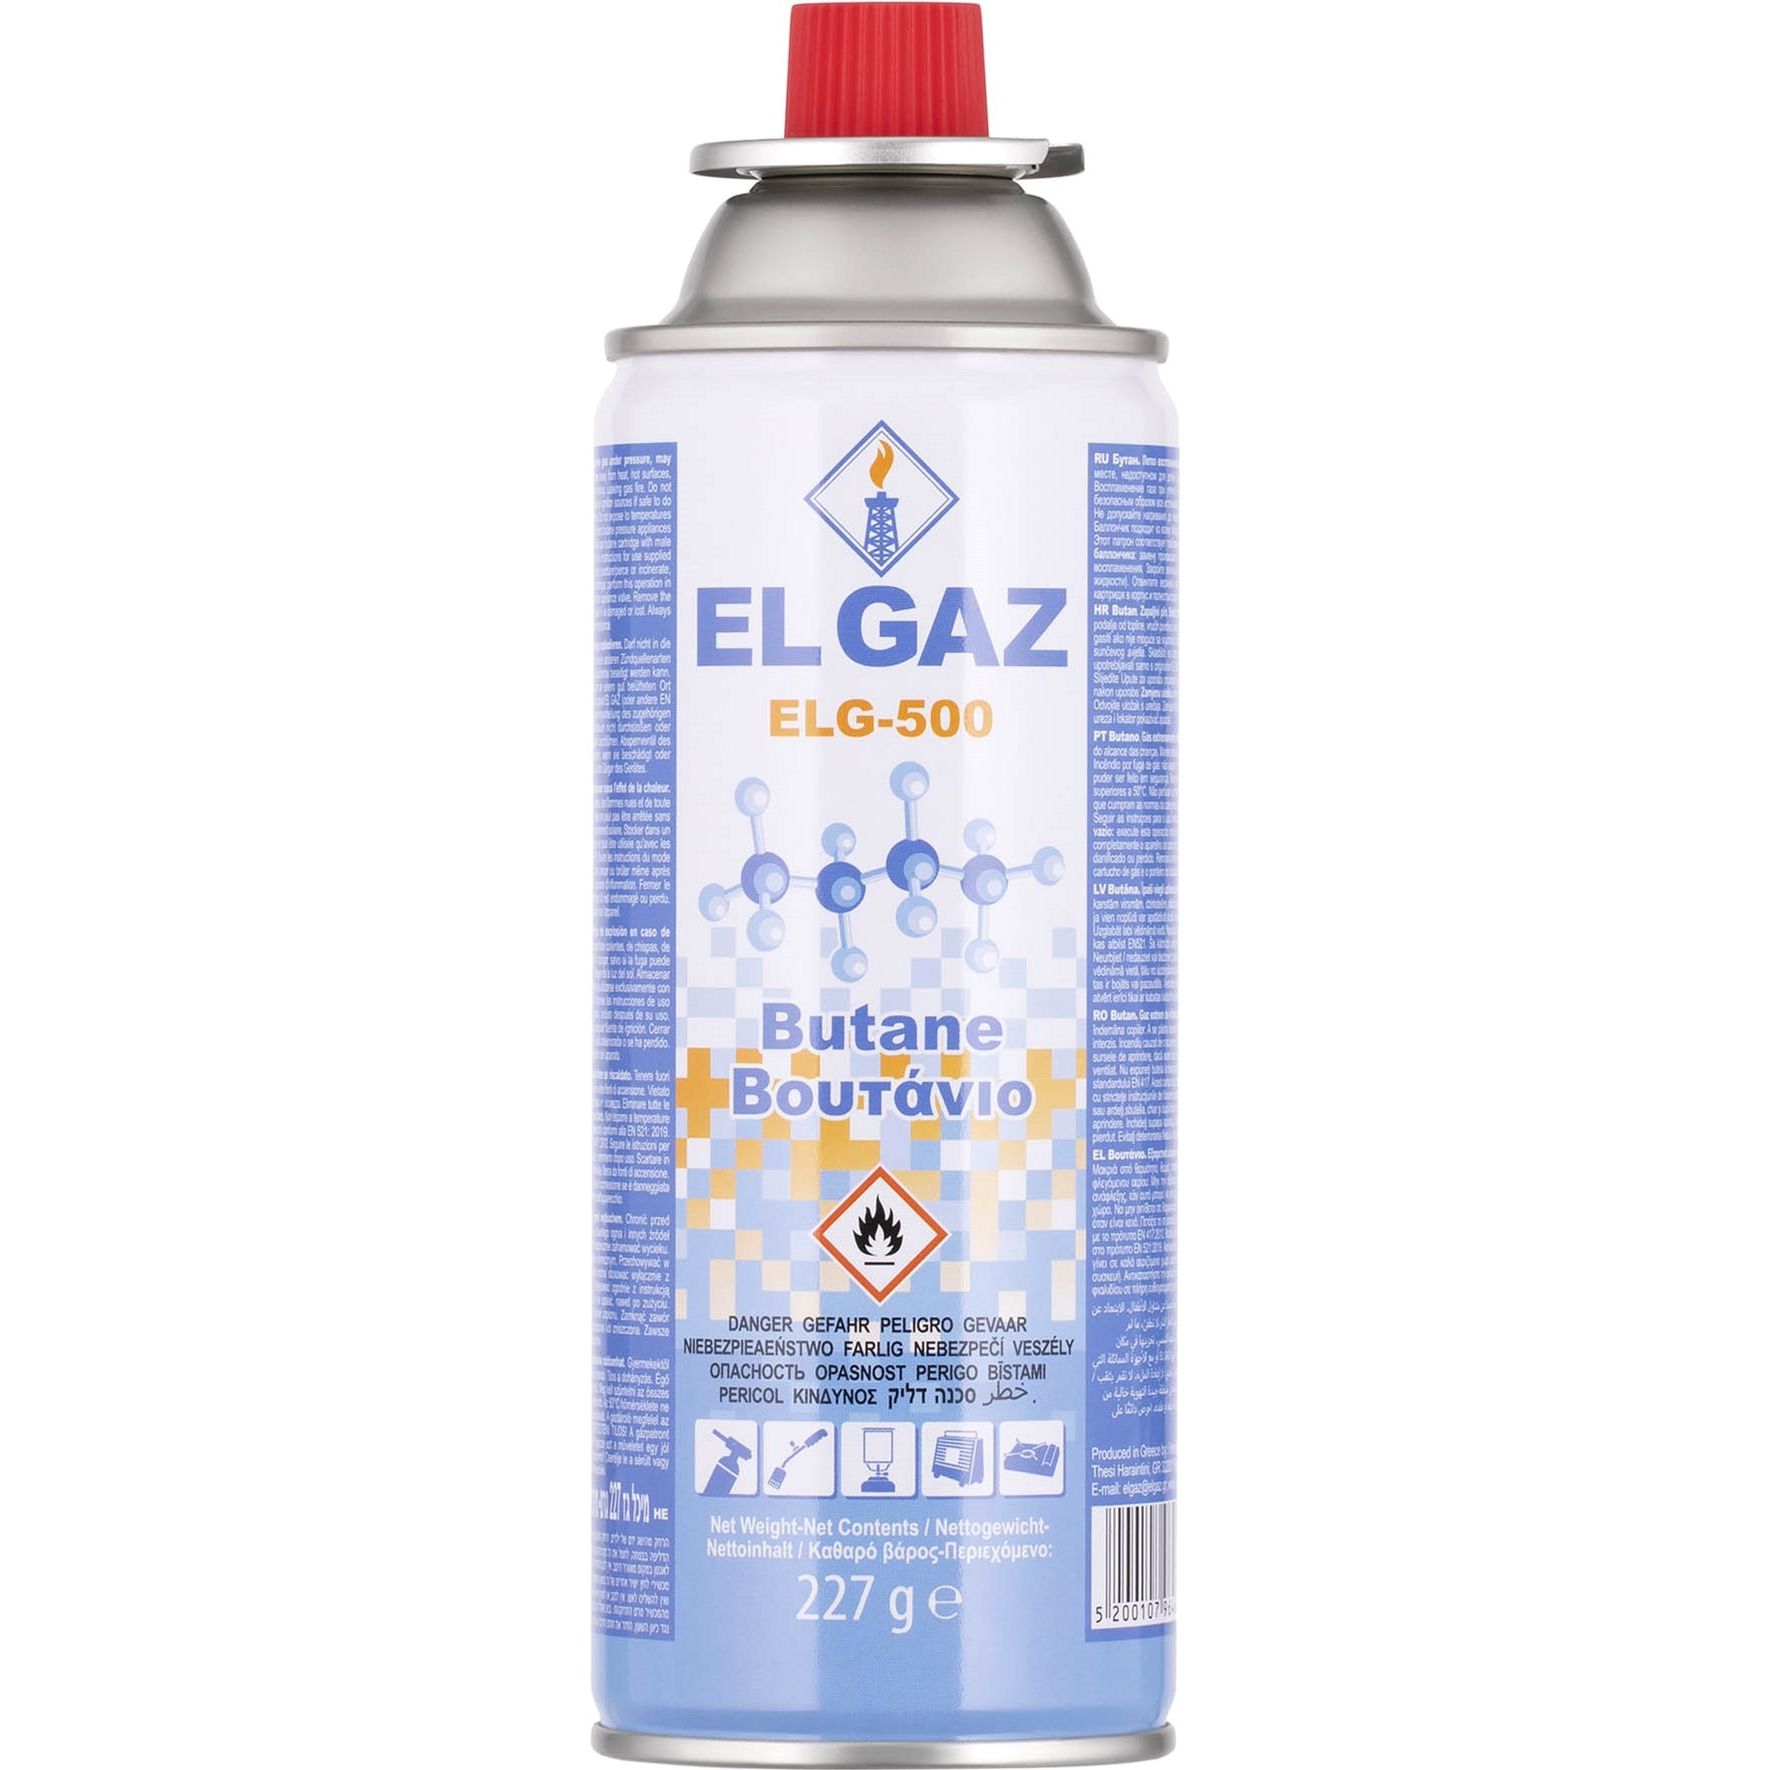 Фото - Газовий балон EL GAZ Балон-картридж газовий  ELG-500 цанговий бутан 227 г  (104ELG-500)